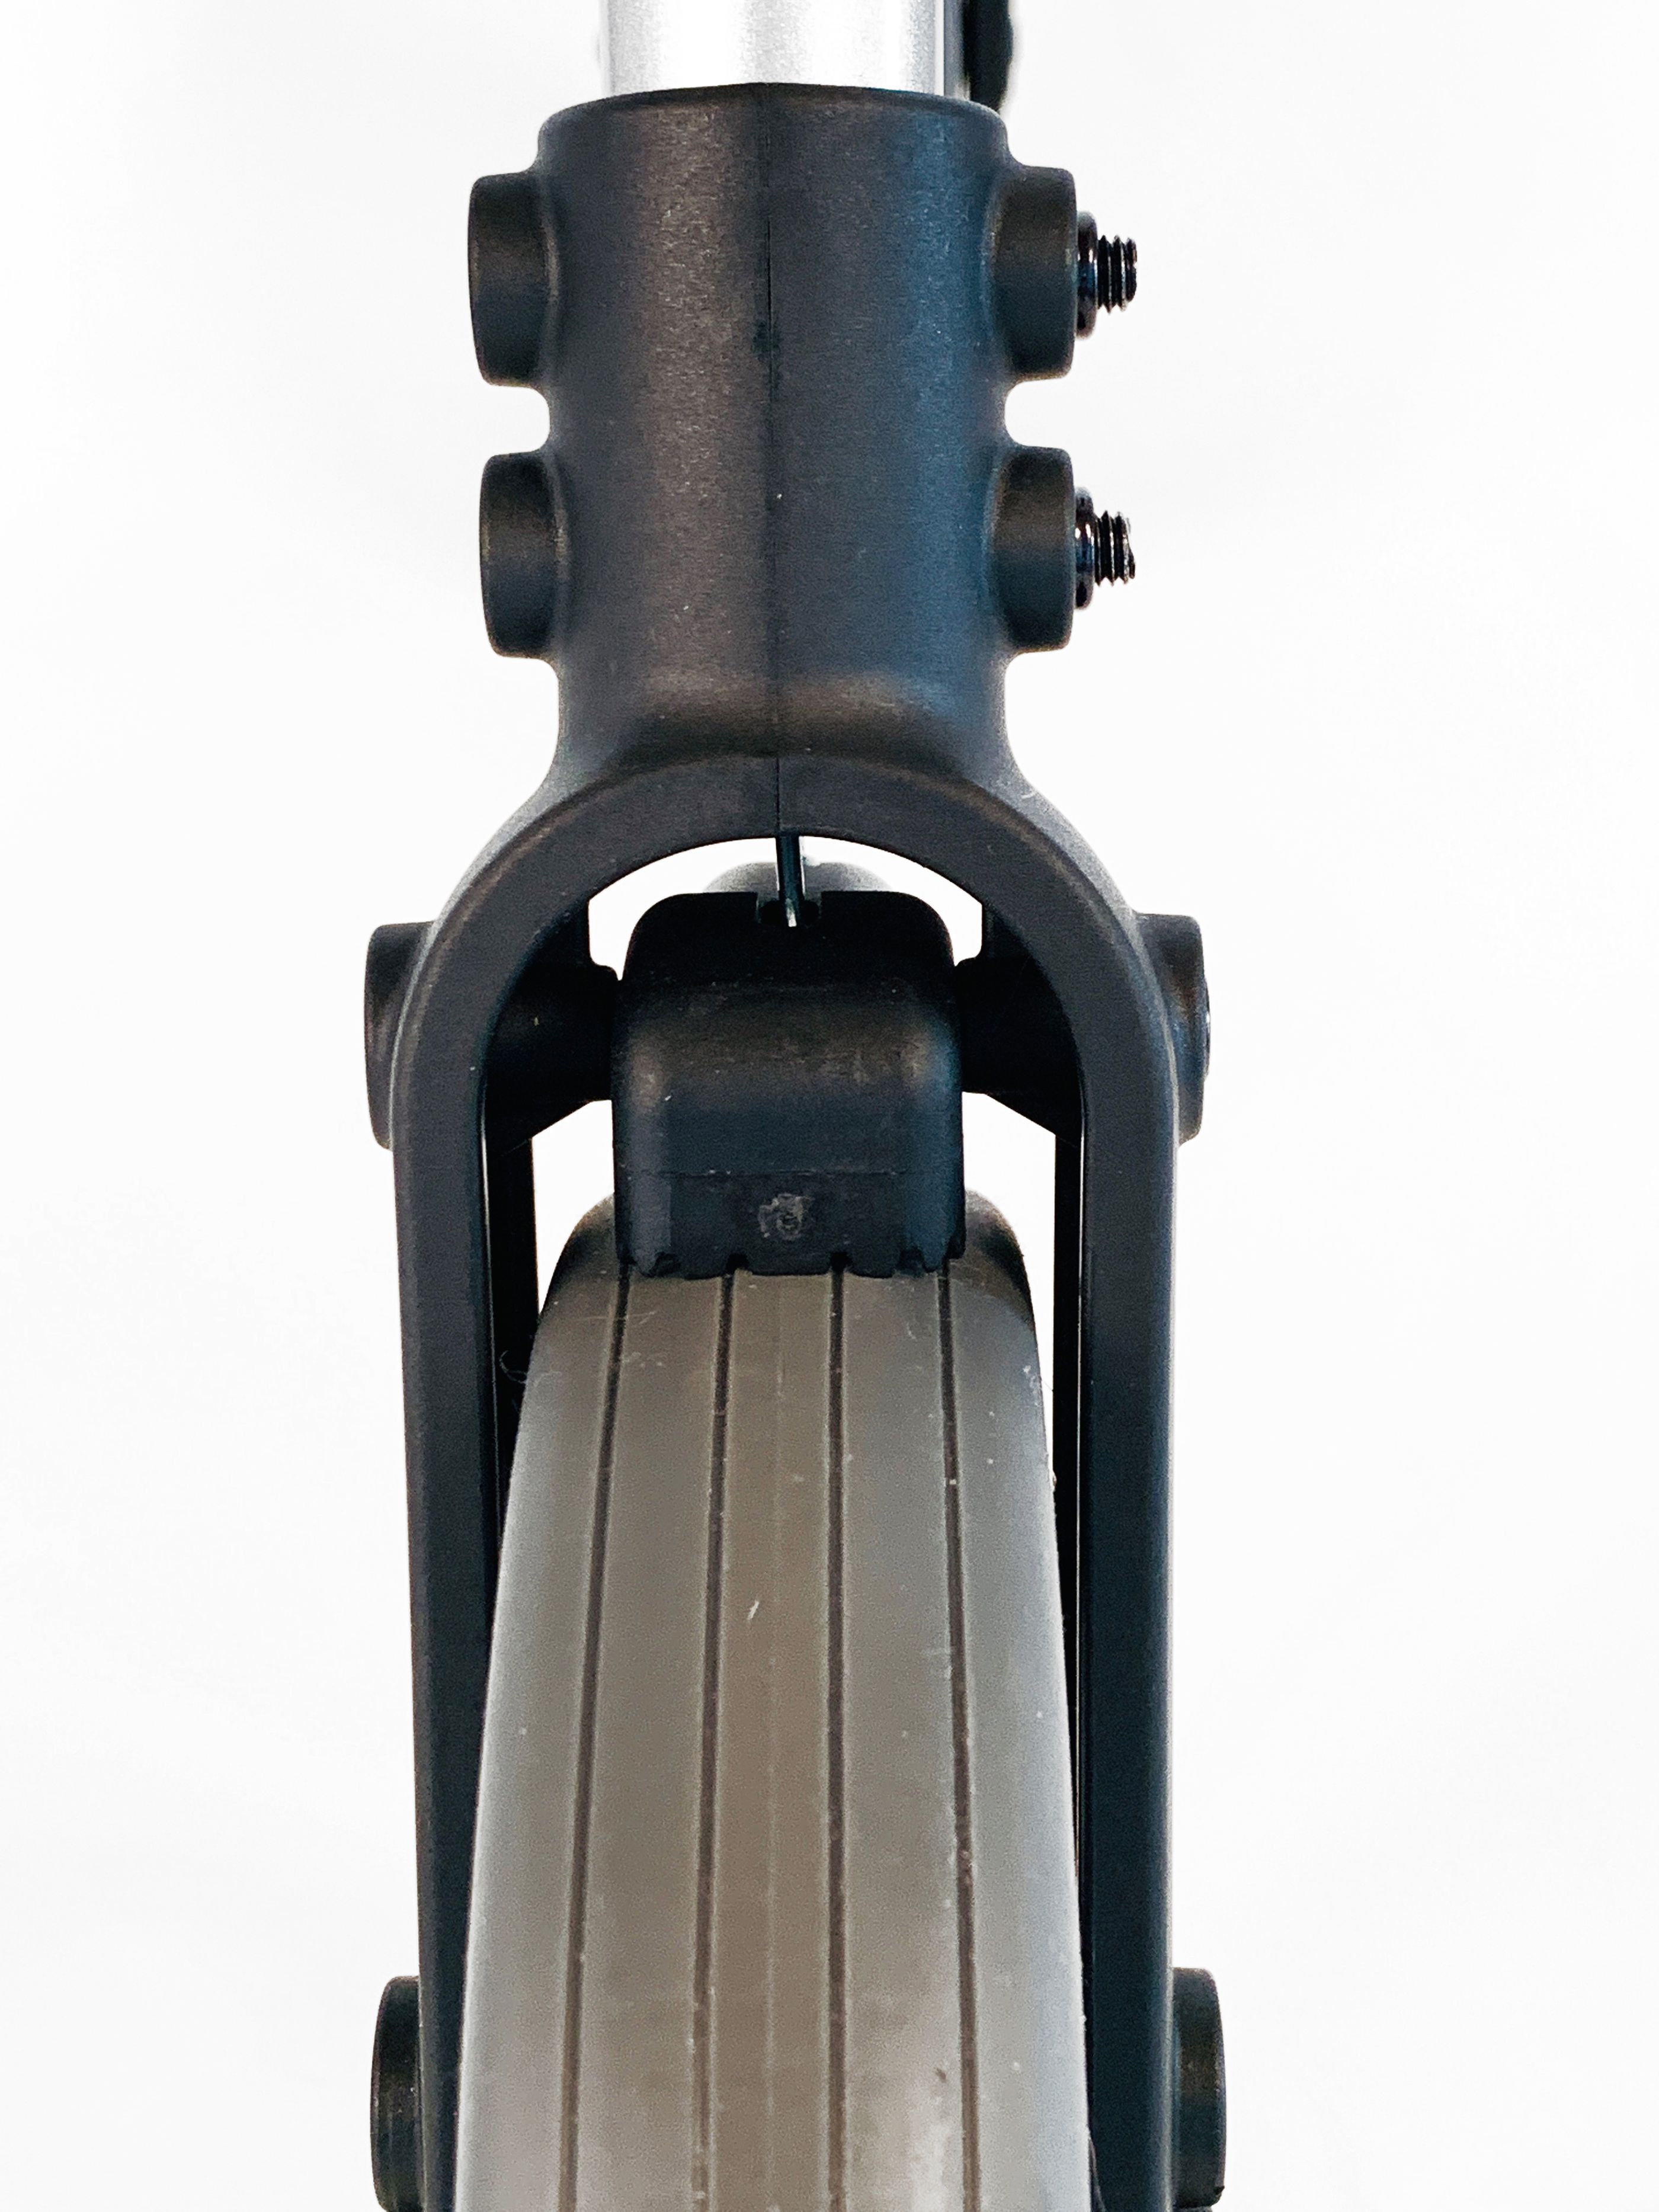 Dietz - Leichtgewicht-Rollator LIGERO Einkaufsrollator - ORIGINAL mit niedrigem Gewicht nur 7,8kg